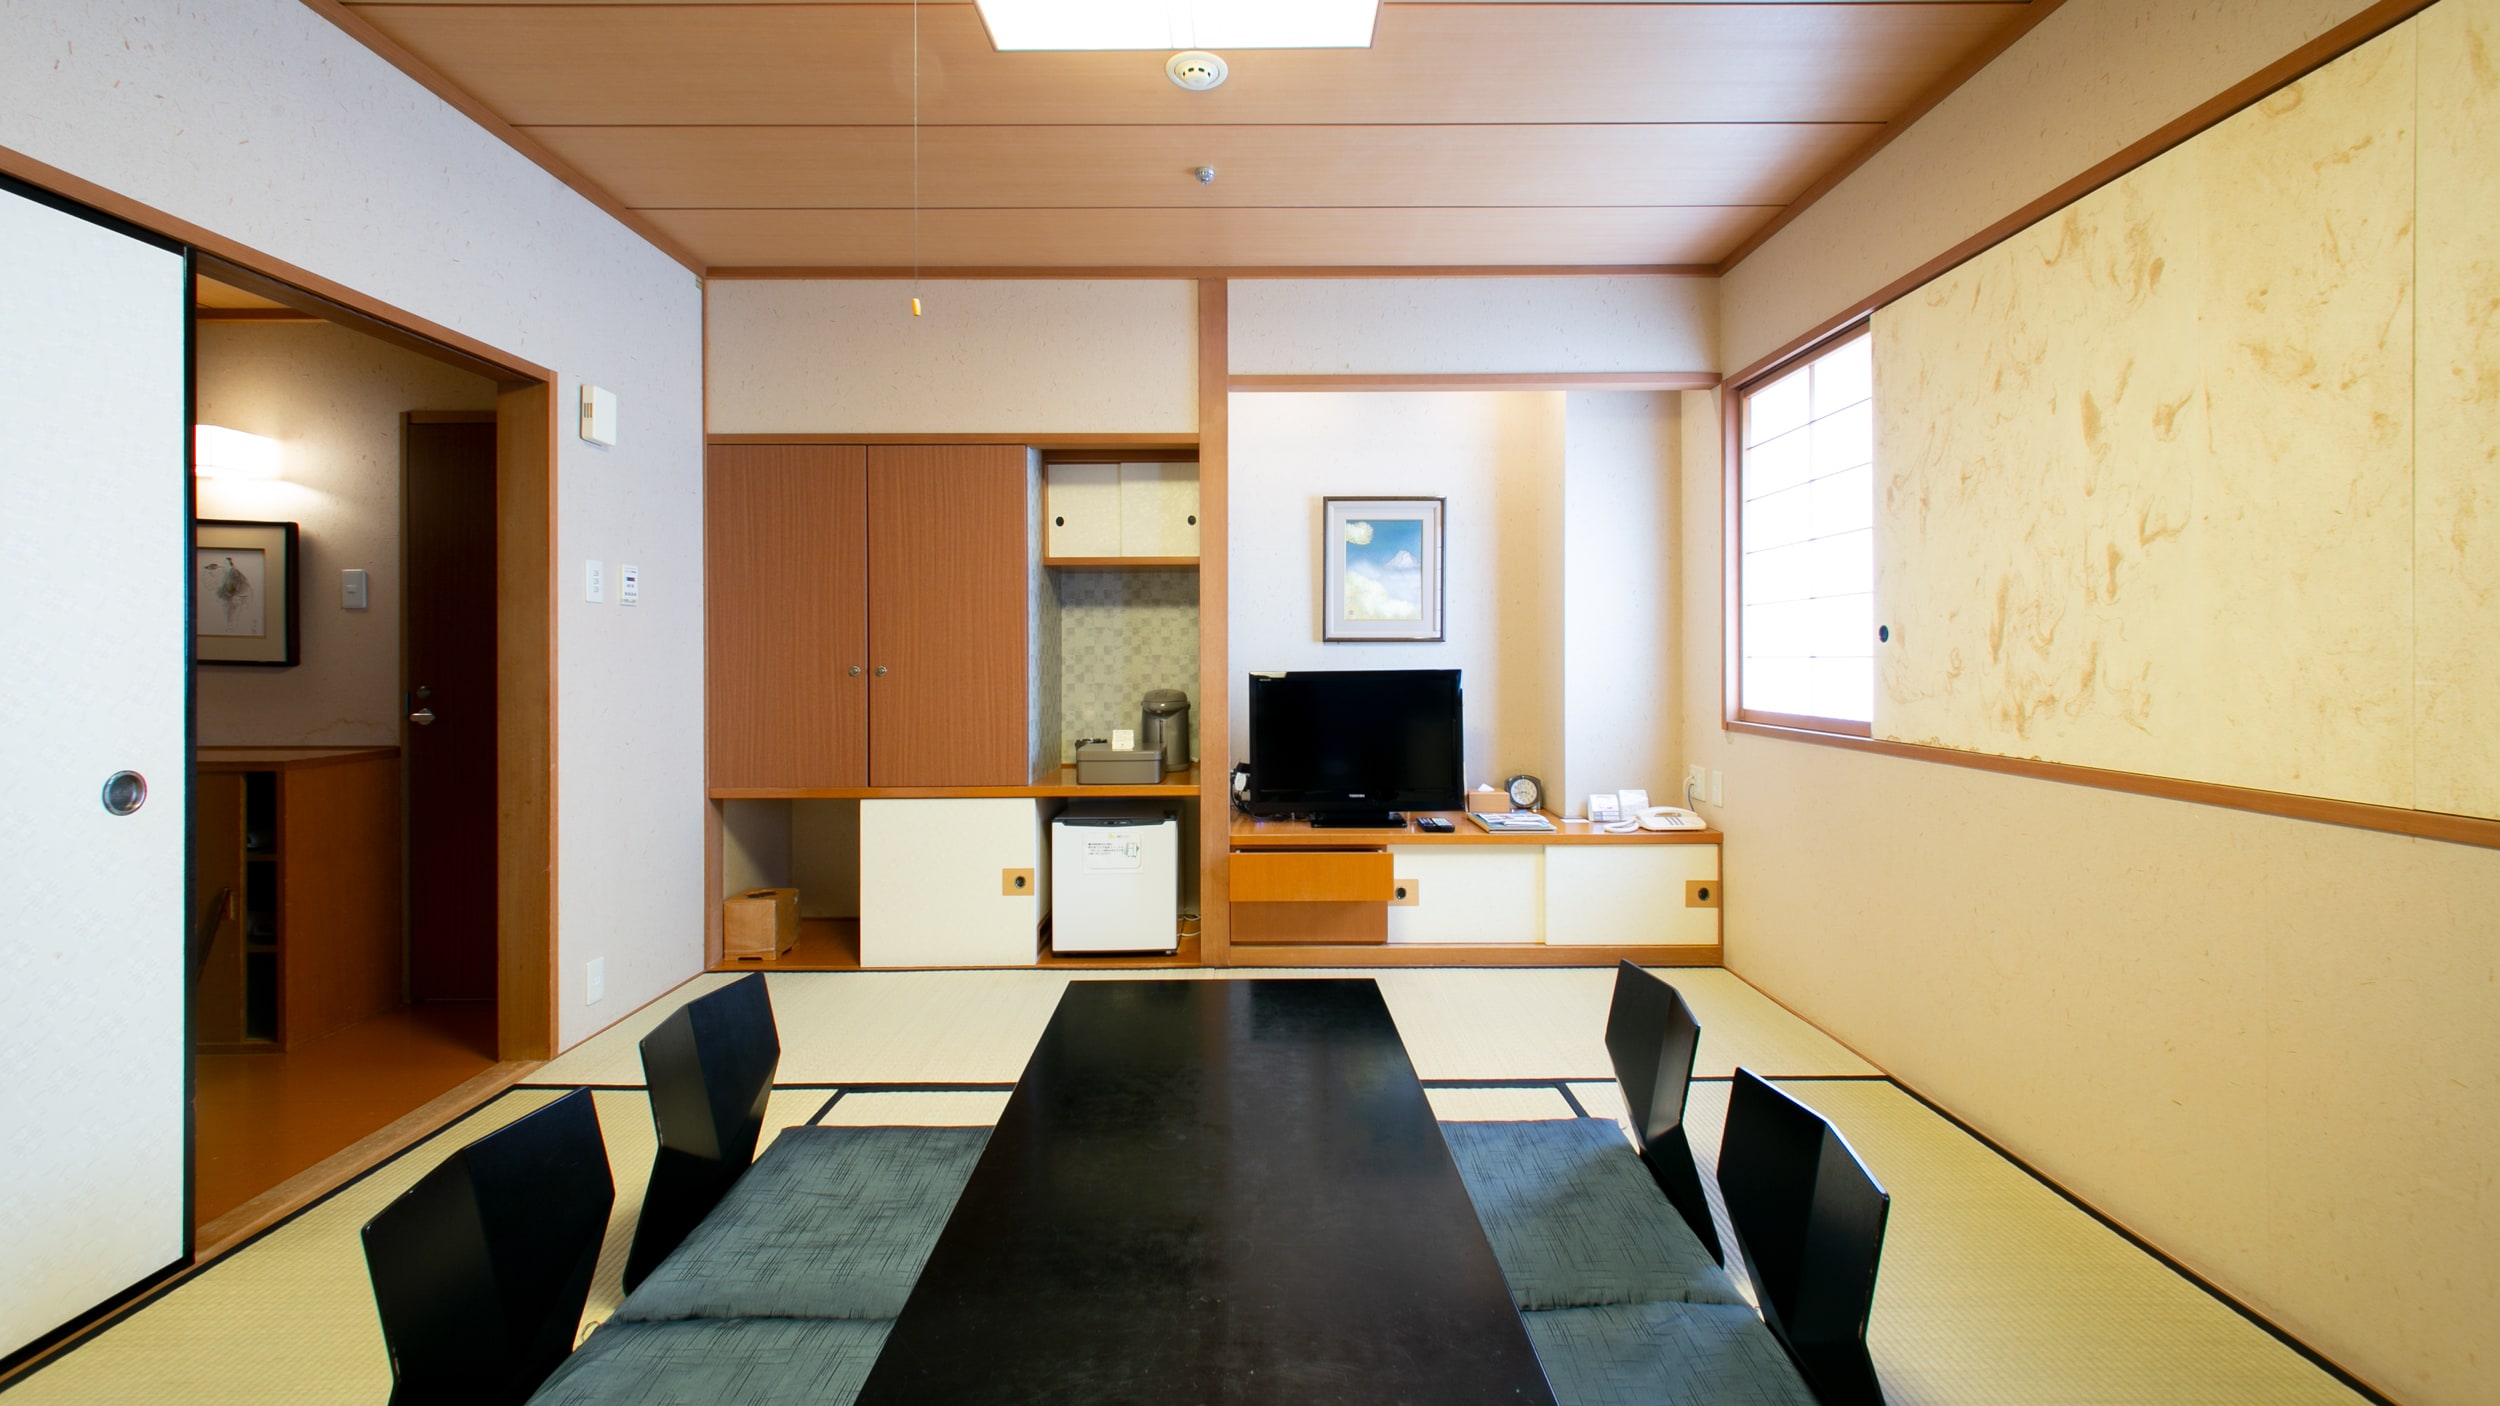 日式房間日式房間8張榻榻米帶獨立浴室和衛生間